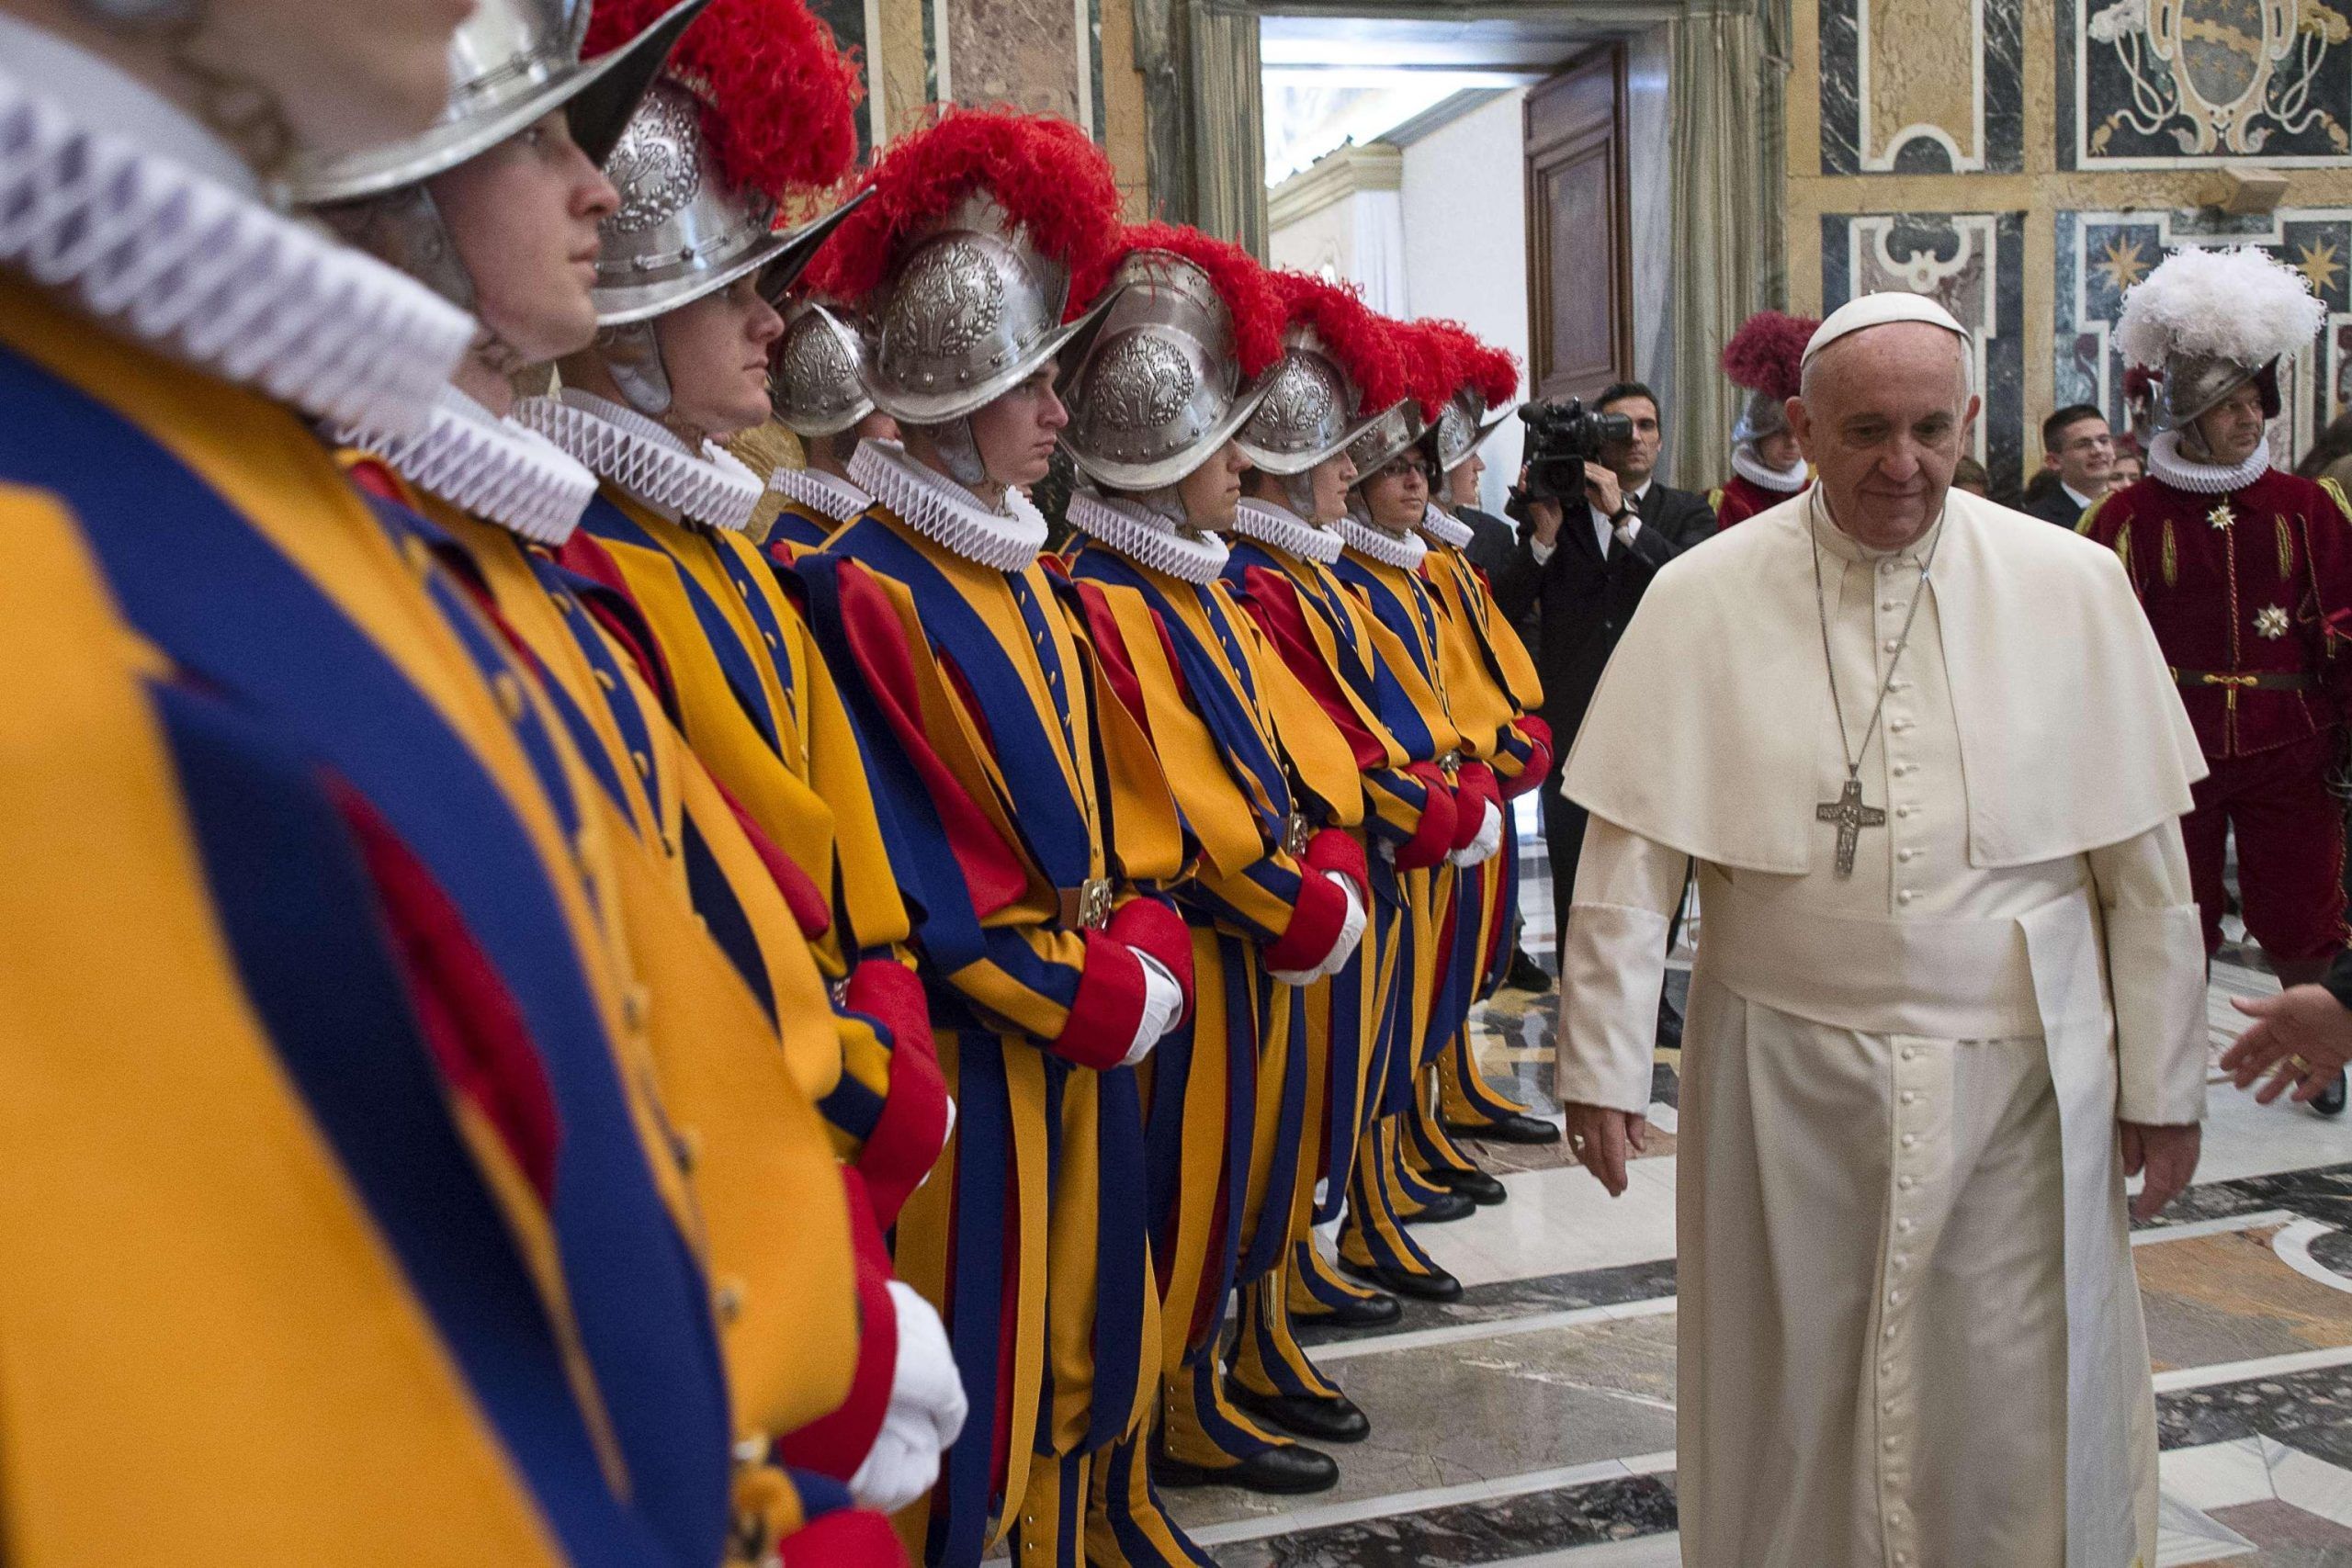 Il Vaticano senza ‘soldati’, guardie svizzere sotto organico e non si arruola più nessuno